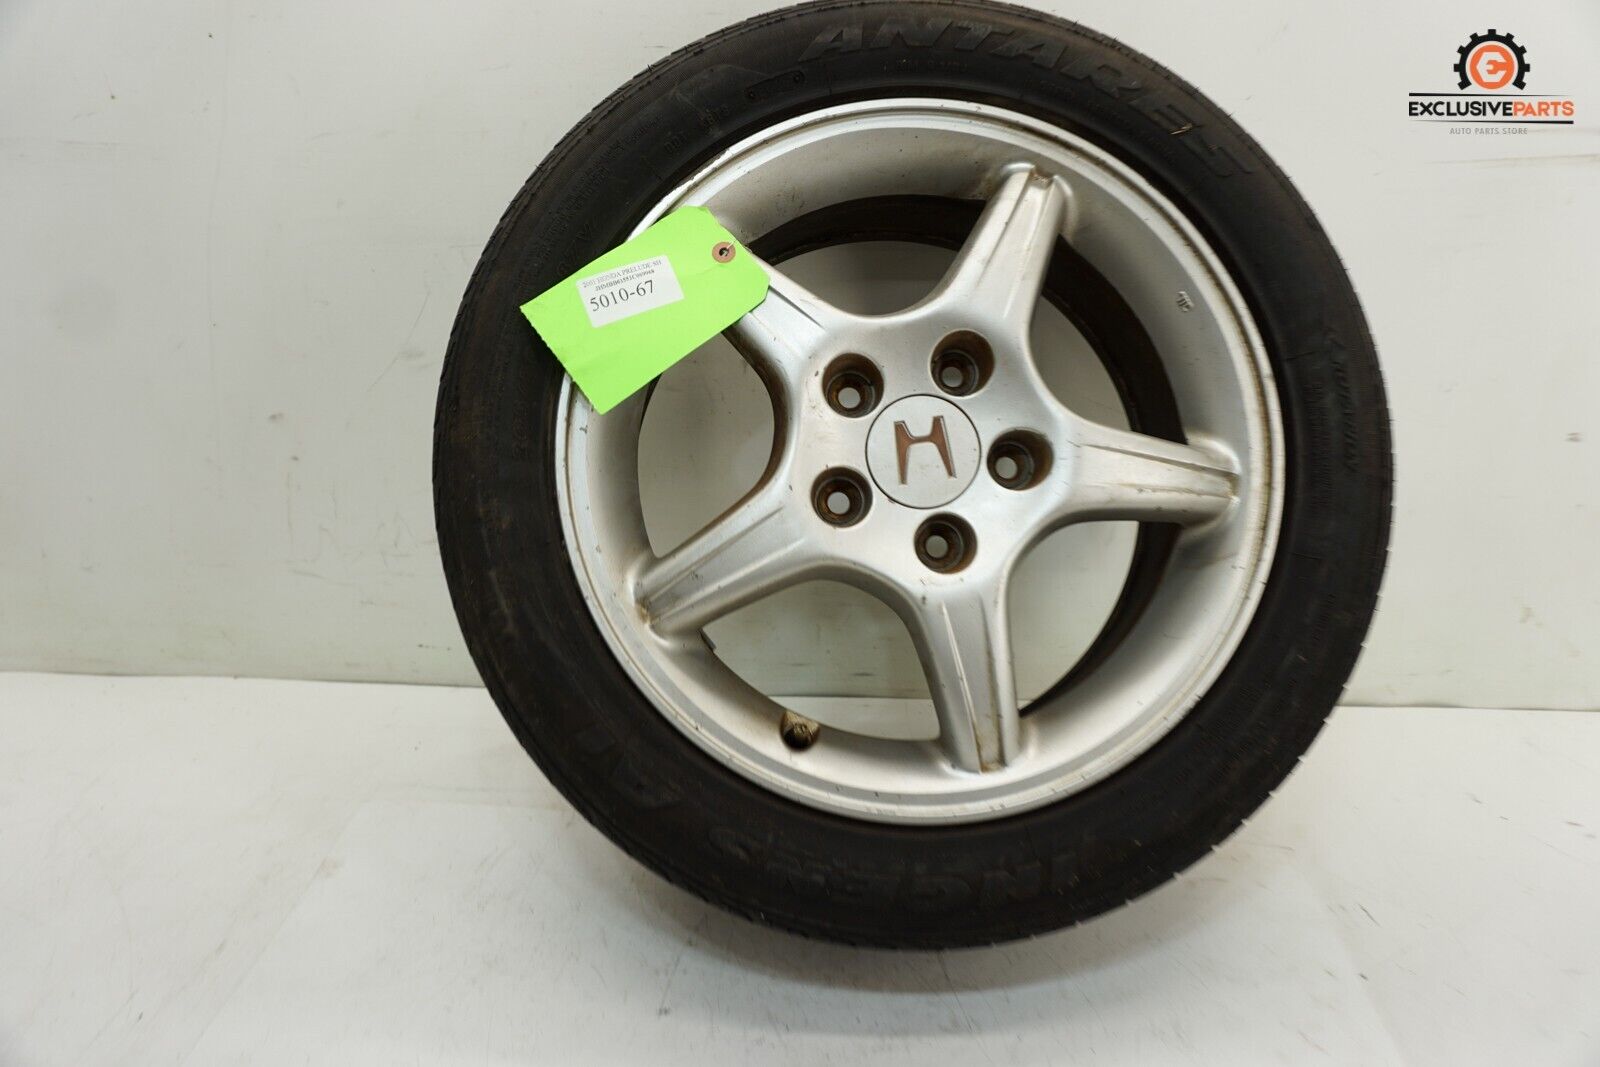 1997-01 Honda Prelude SH OEM Wheel Rim Tire Antares 205/50ZR16 87V 5010